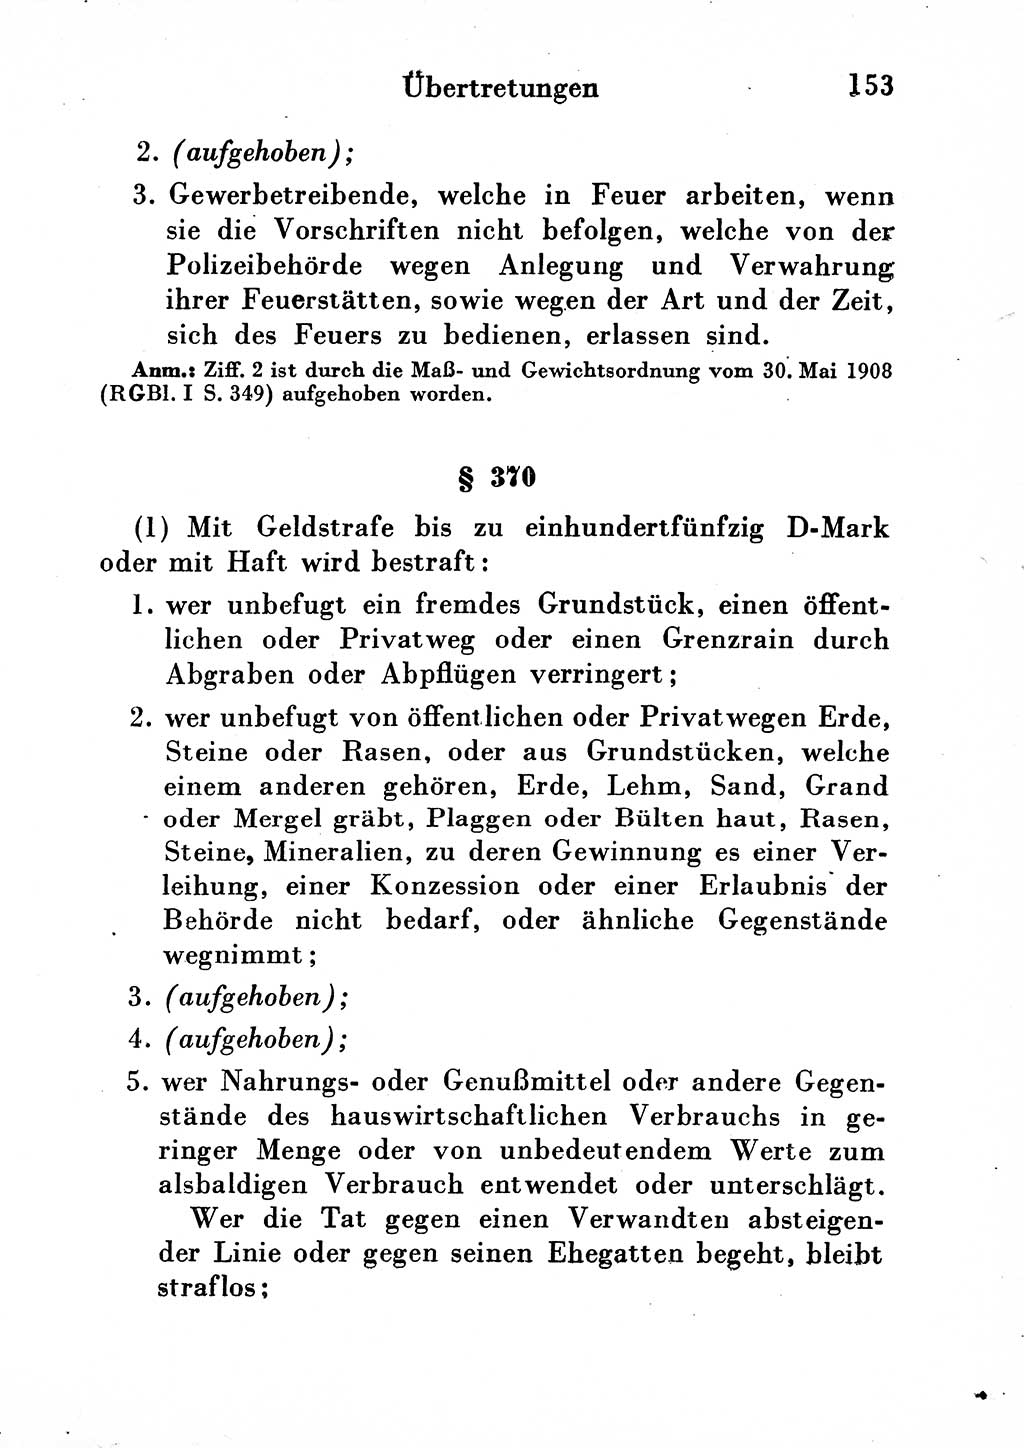 Strafgesetzbuch (StGB) und andere Strafgesetze [Deutsche Demokratische Republik (DDR)] 1954, Seite 153 (StGB Strafges. DDR 1954, S. 153)